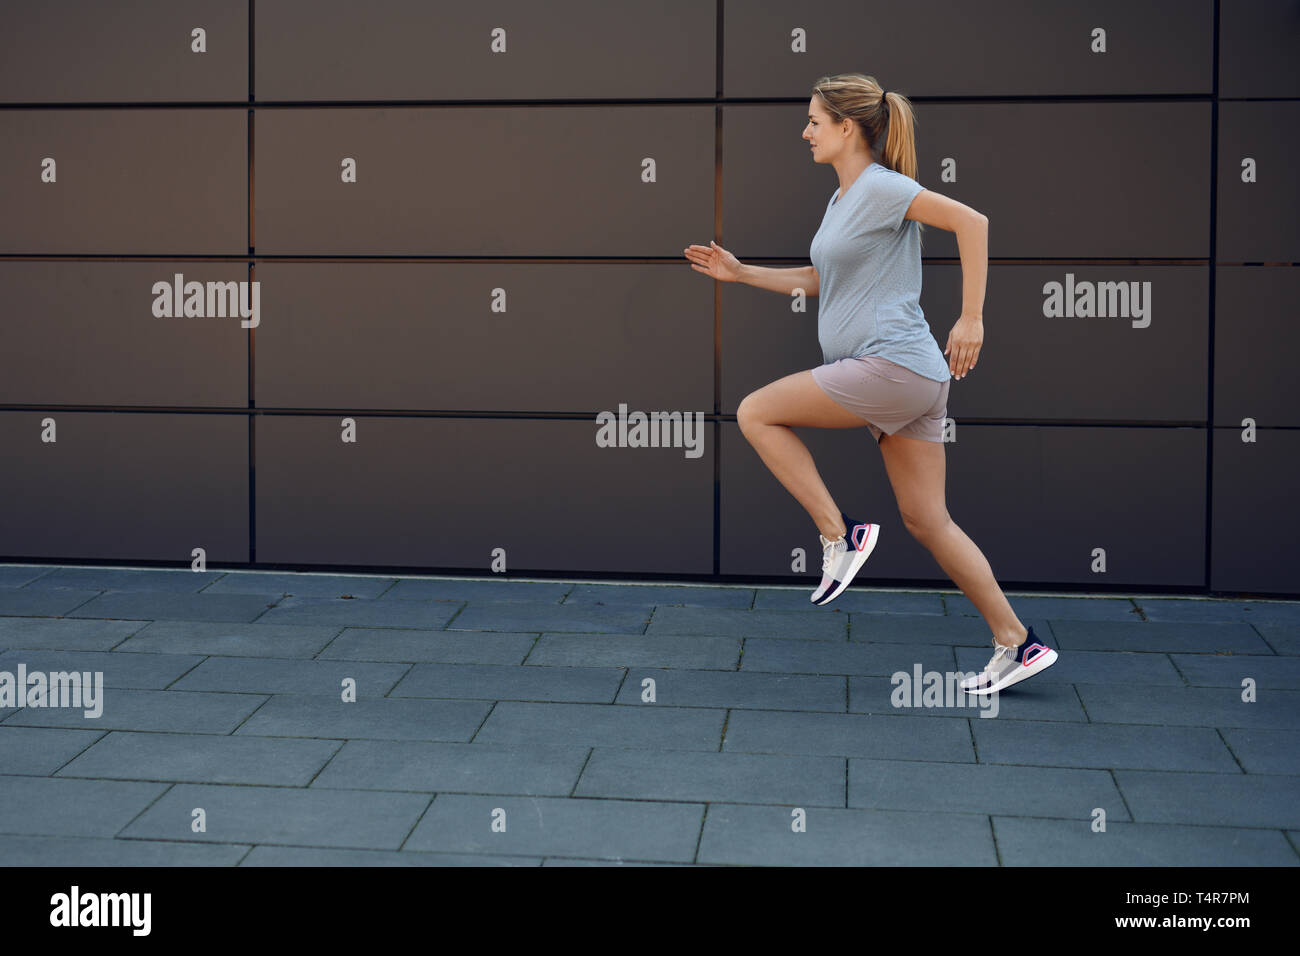 Schwangere junge Frau fit halten Sprinten entlang eines gepflasterten Gehweg vor einer Wand in einem gesunden Lebensstil Konzept Stockfoto